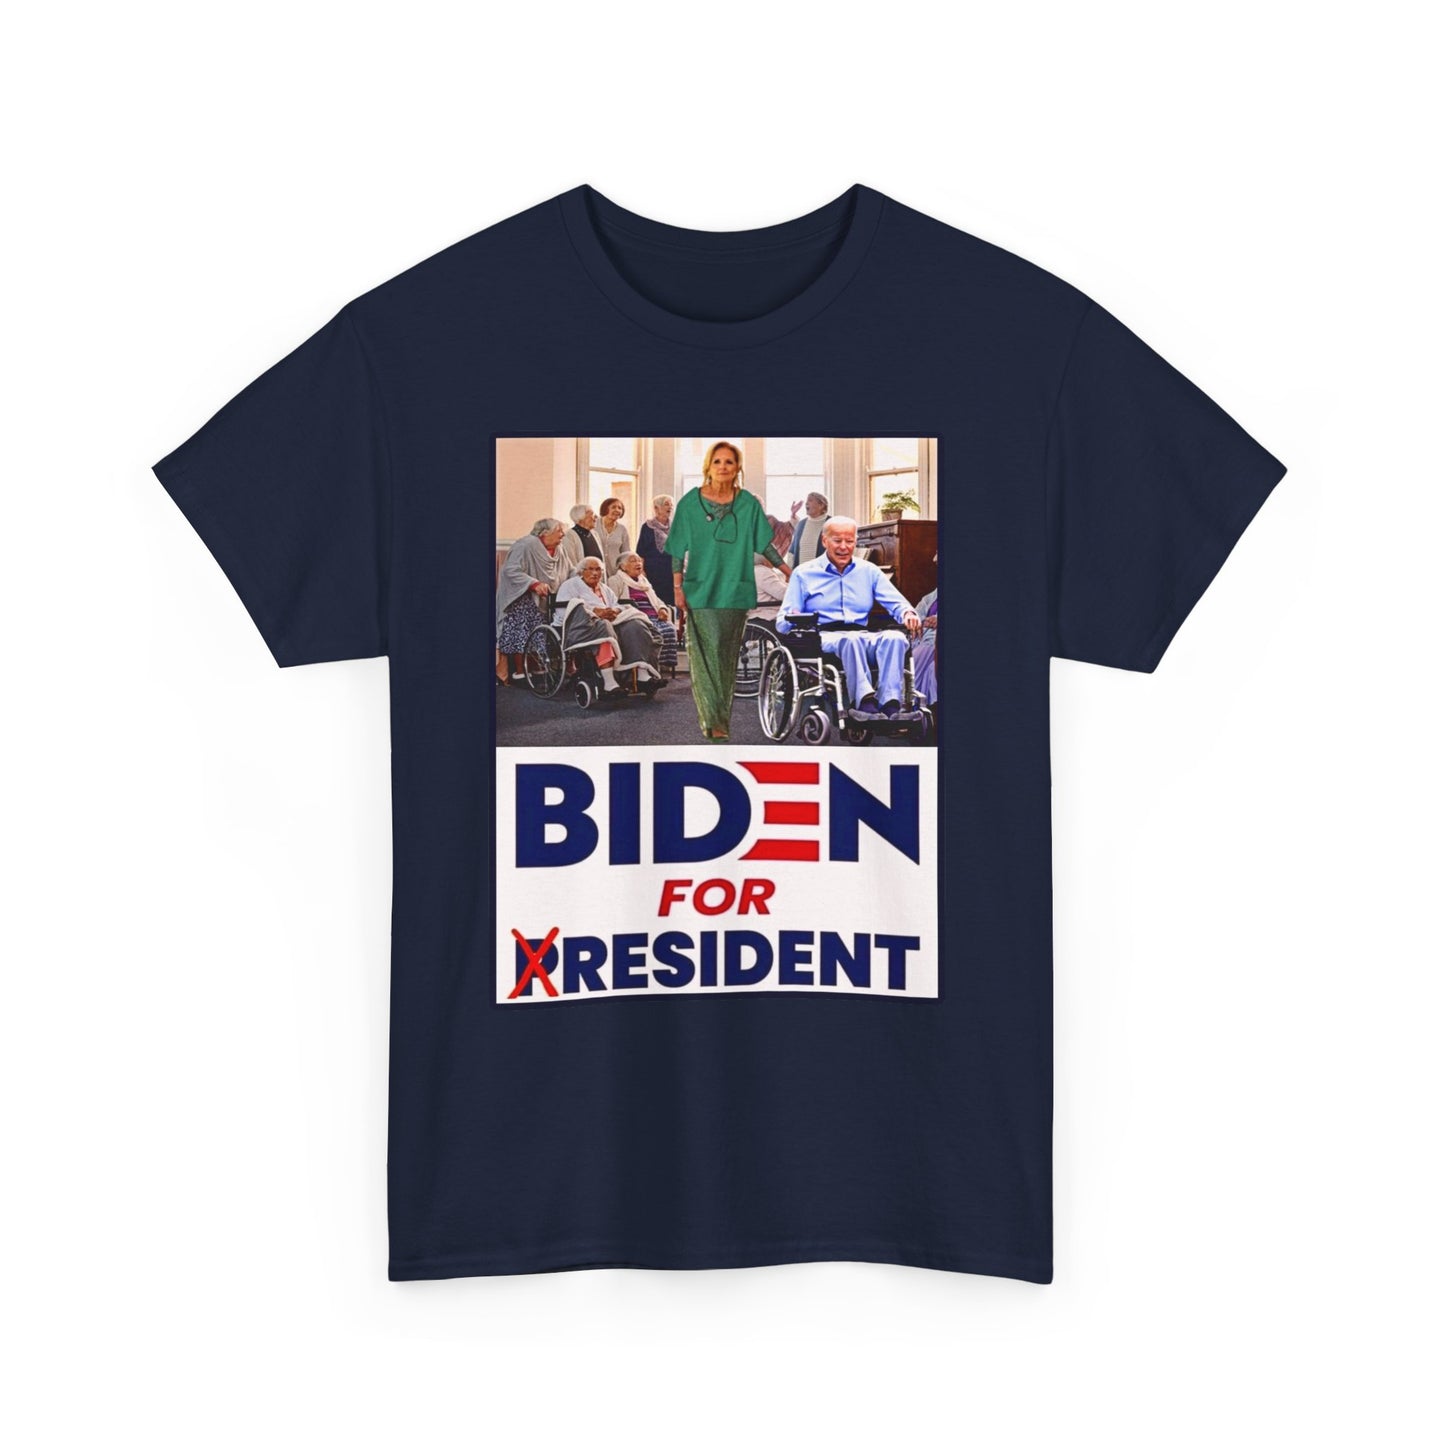 Biden for Resident Shirt